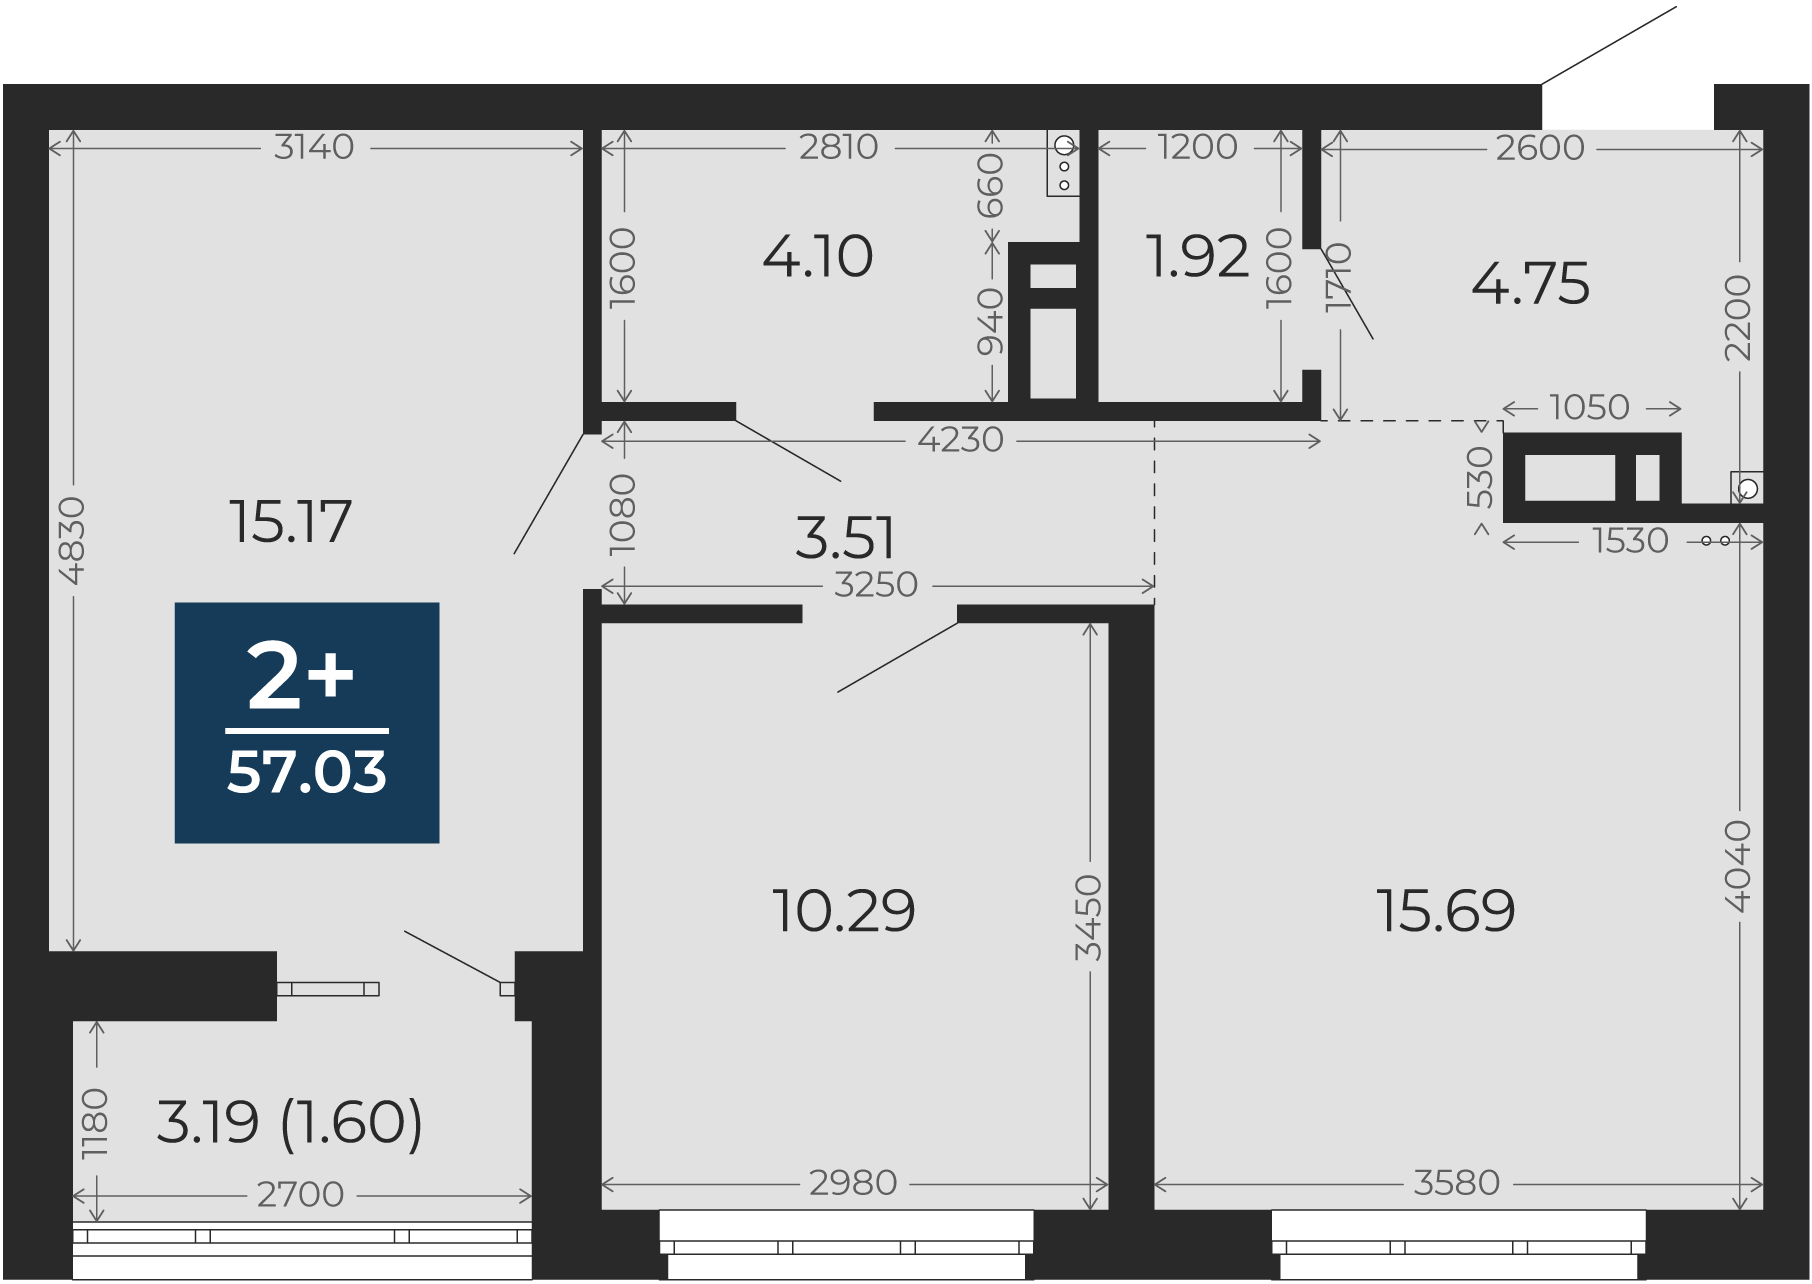 Квартира № 377, 2-комнатная, 57.03 кв. м, 6 этаж